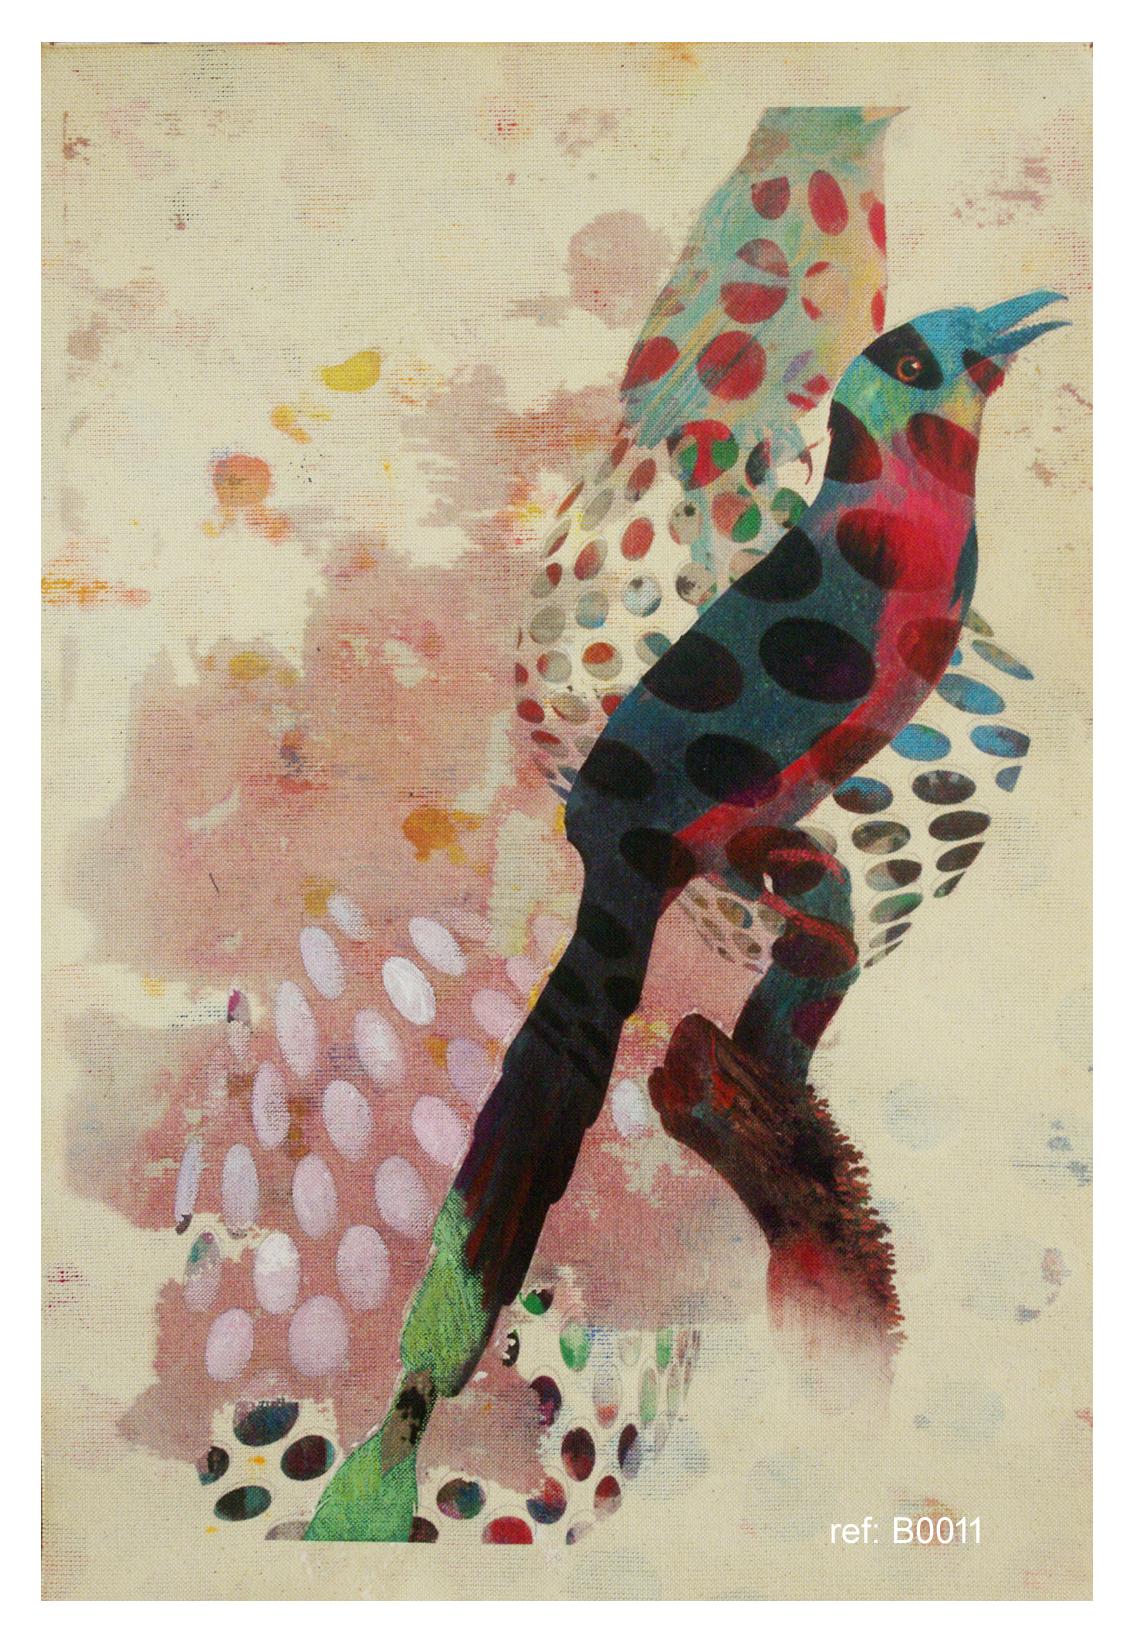 Vogele 018- Zeitgenössisch, abstrakt, expressionistisch, modern, Straßenkunst, surrealistisch